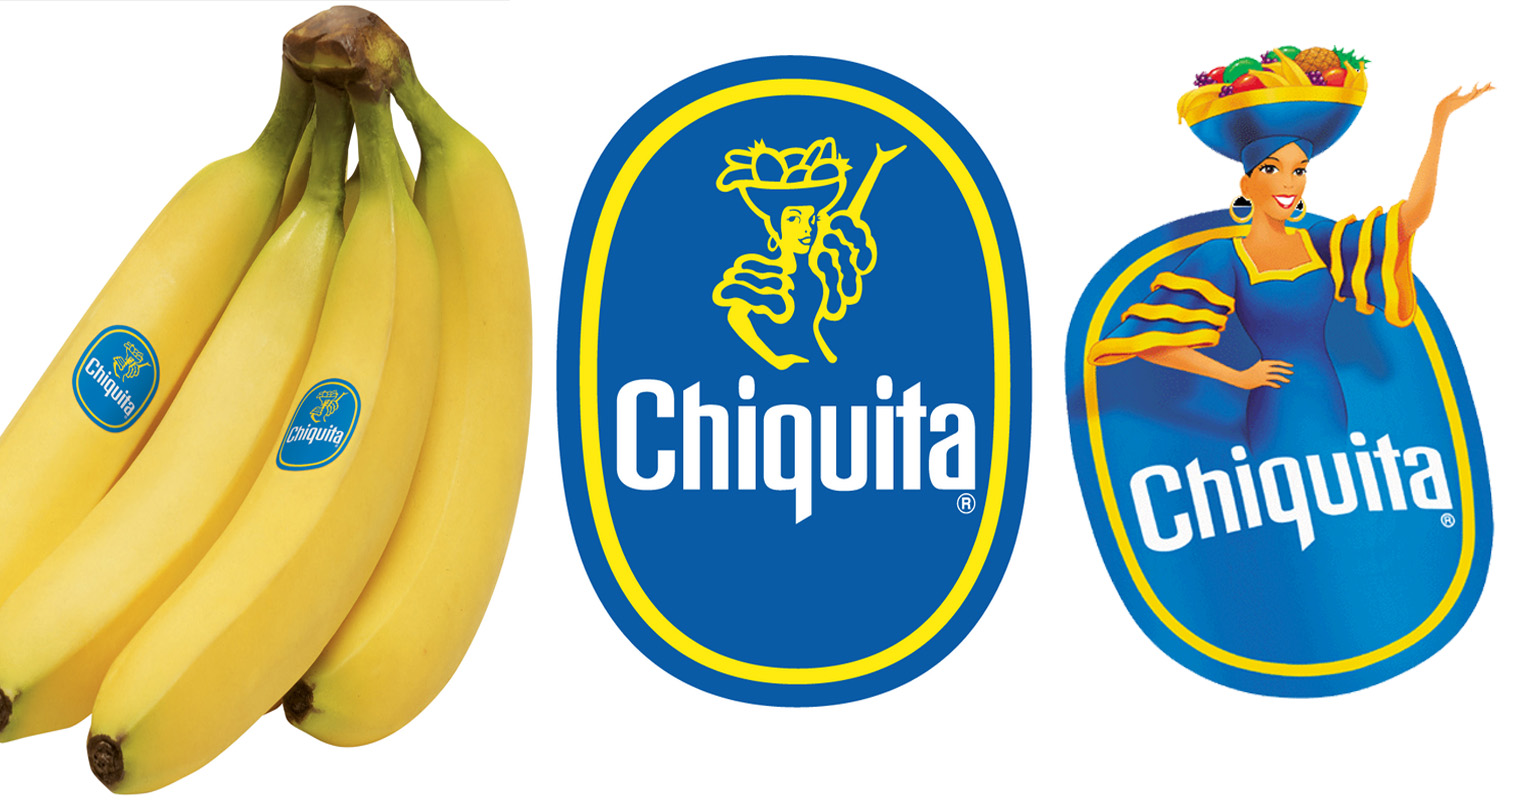 Chiquita banana. 